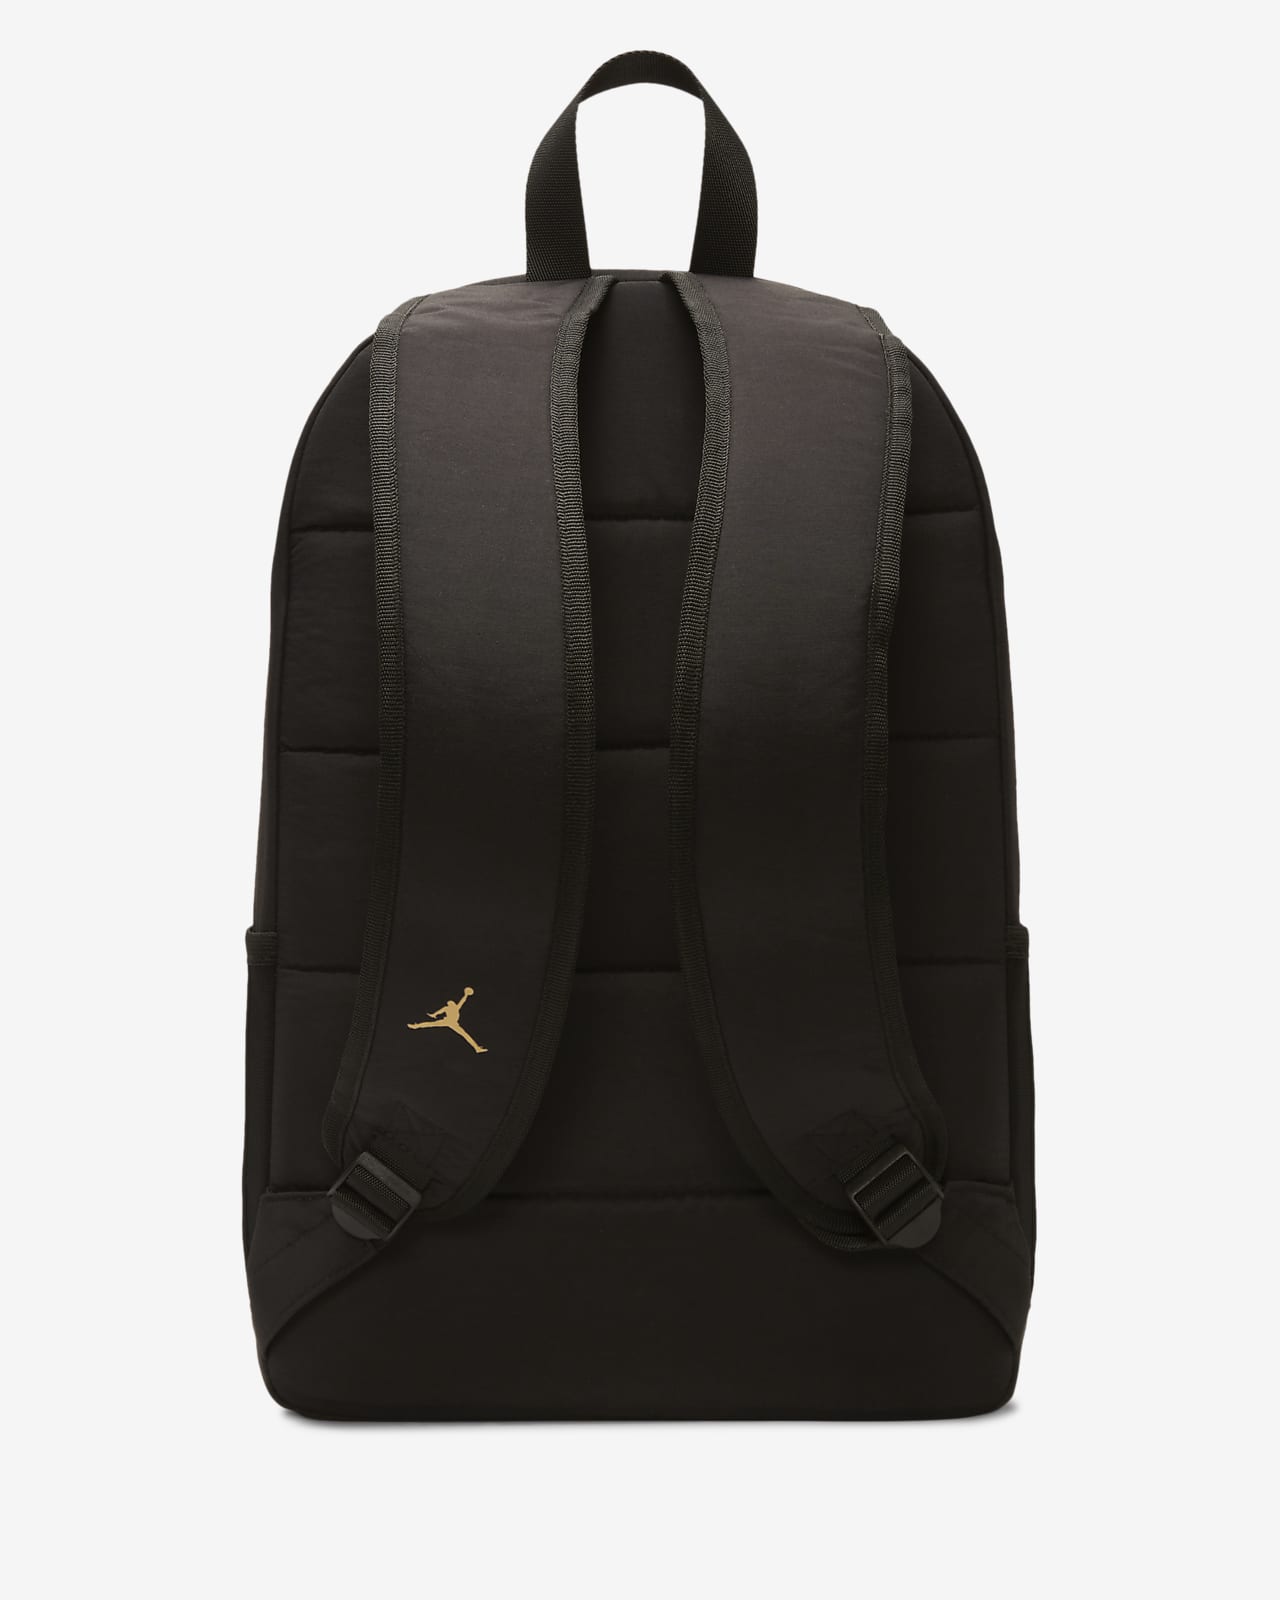 Jordan Black and Gold Backpack Backpack 